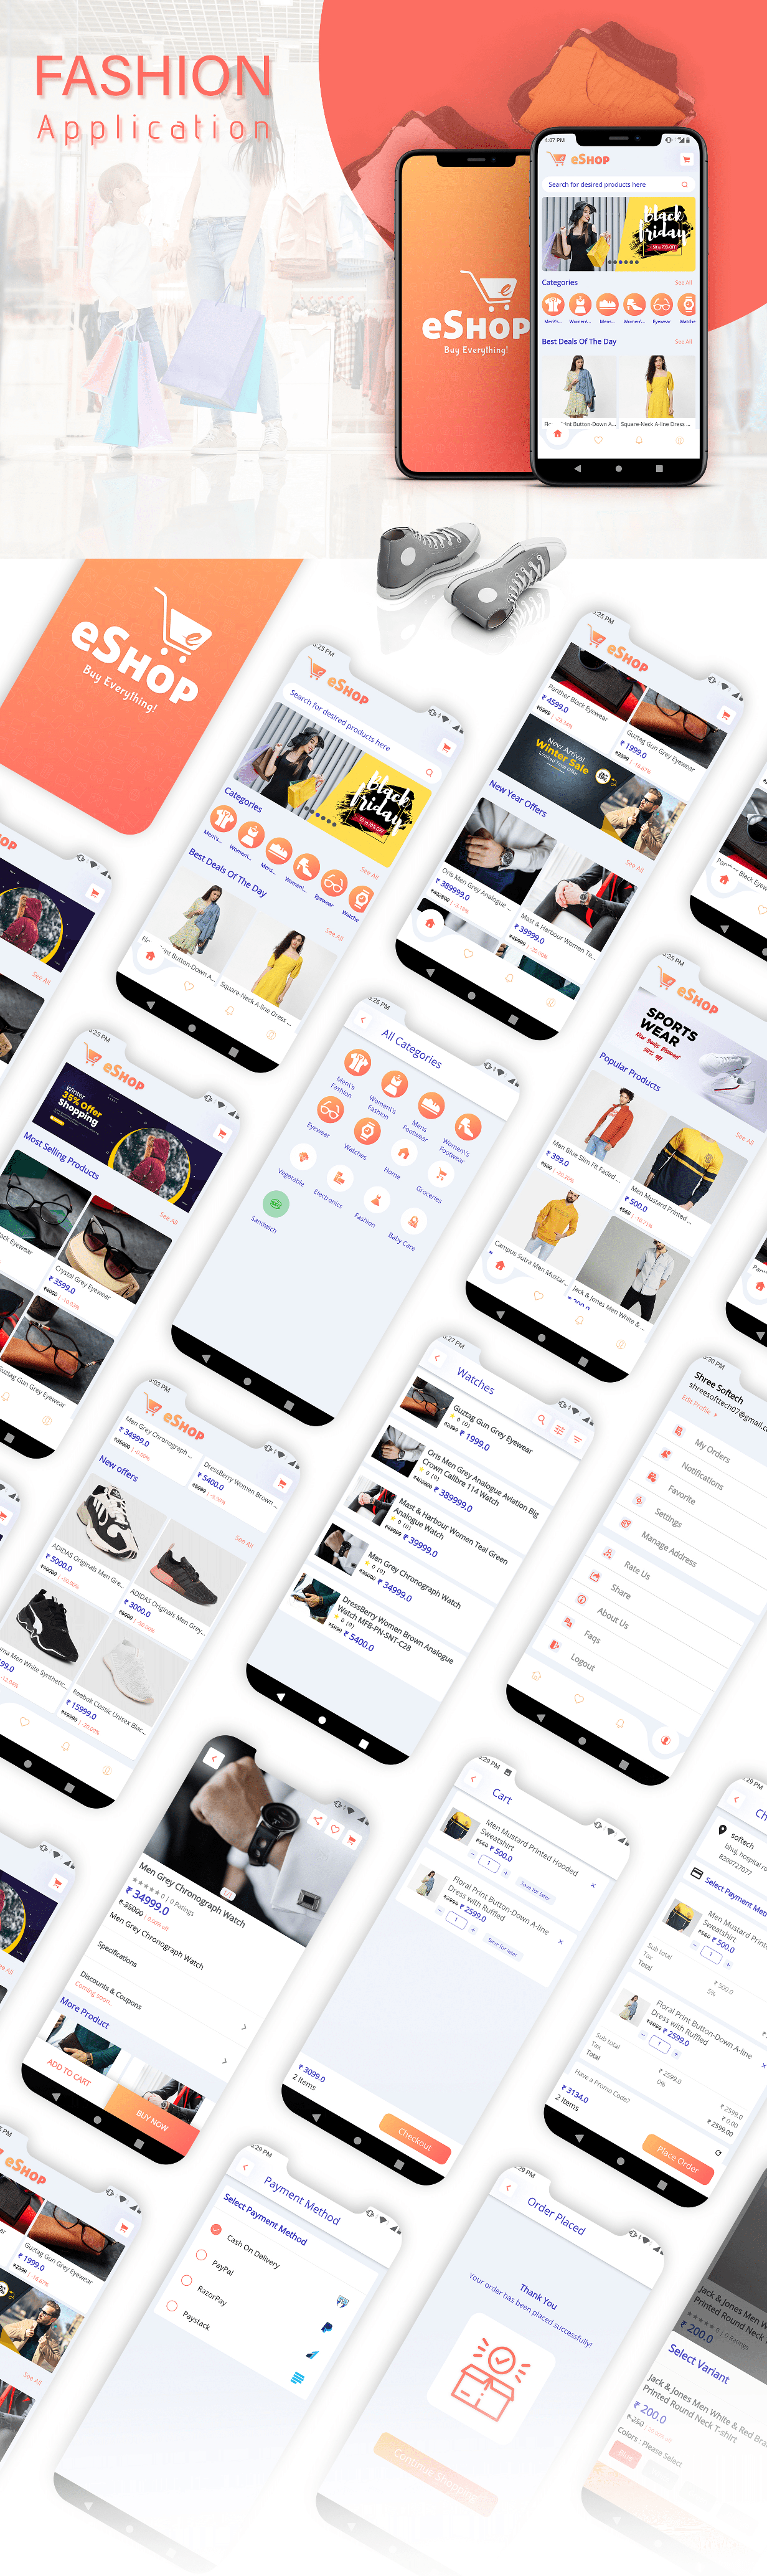 eShop - Flutter E-commerce Full App - 16